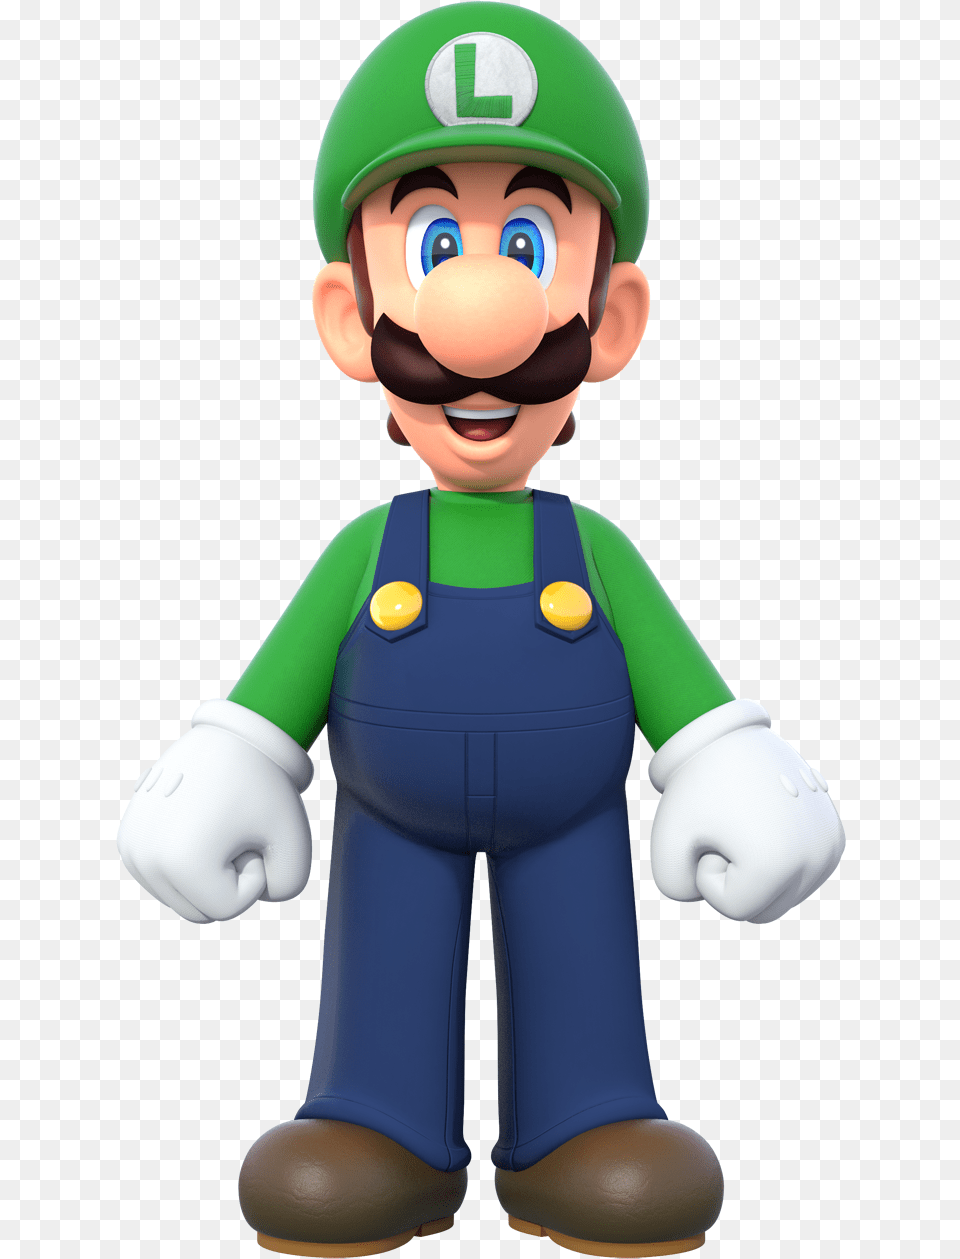 Luigi New Super Mario Bros U Deluxe New Super Mario Bros U Deluxe Luigi, Toy, Face, Head, Person Png Image